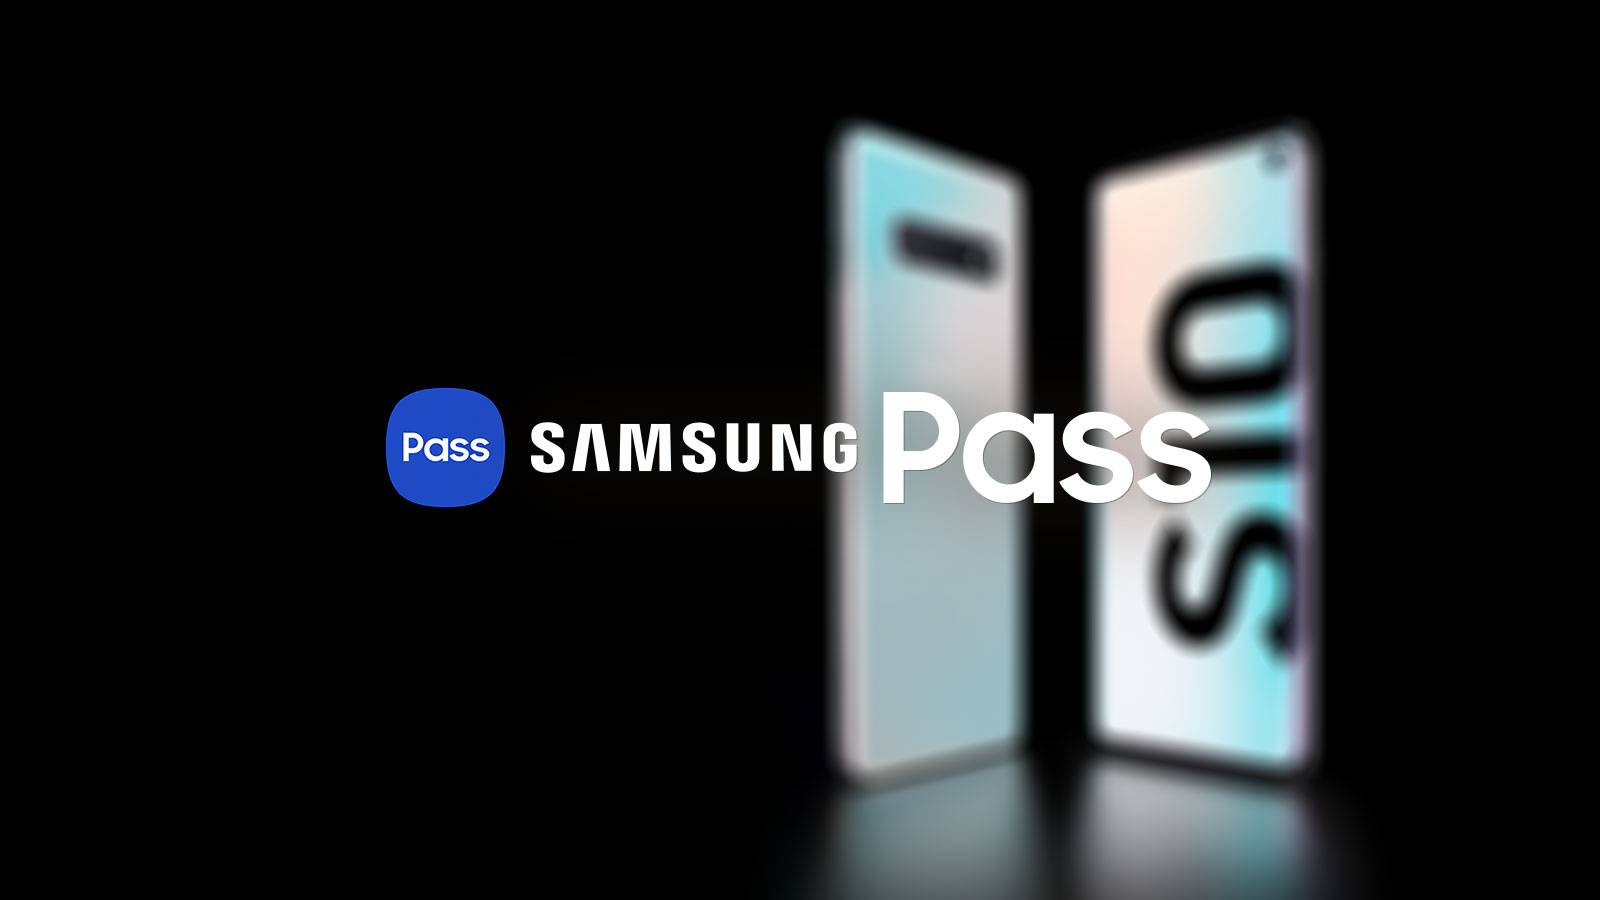 Samsung Pass Title